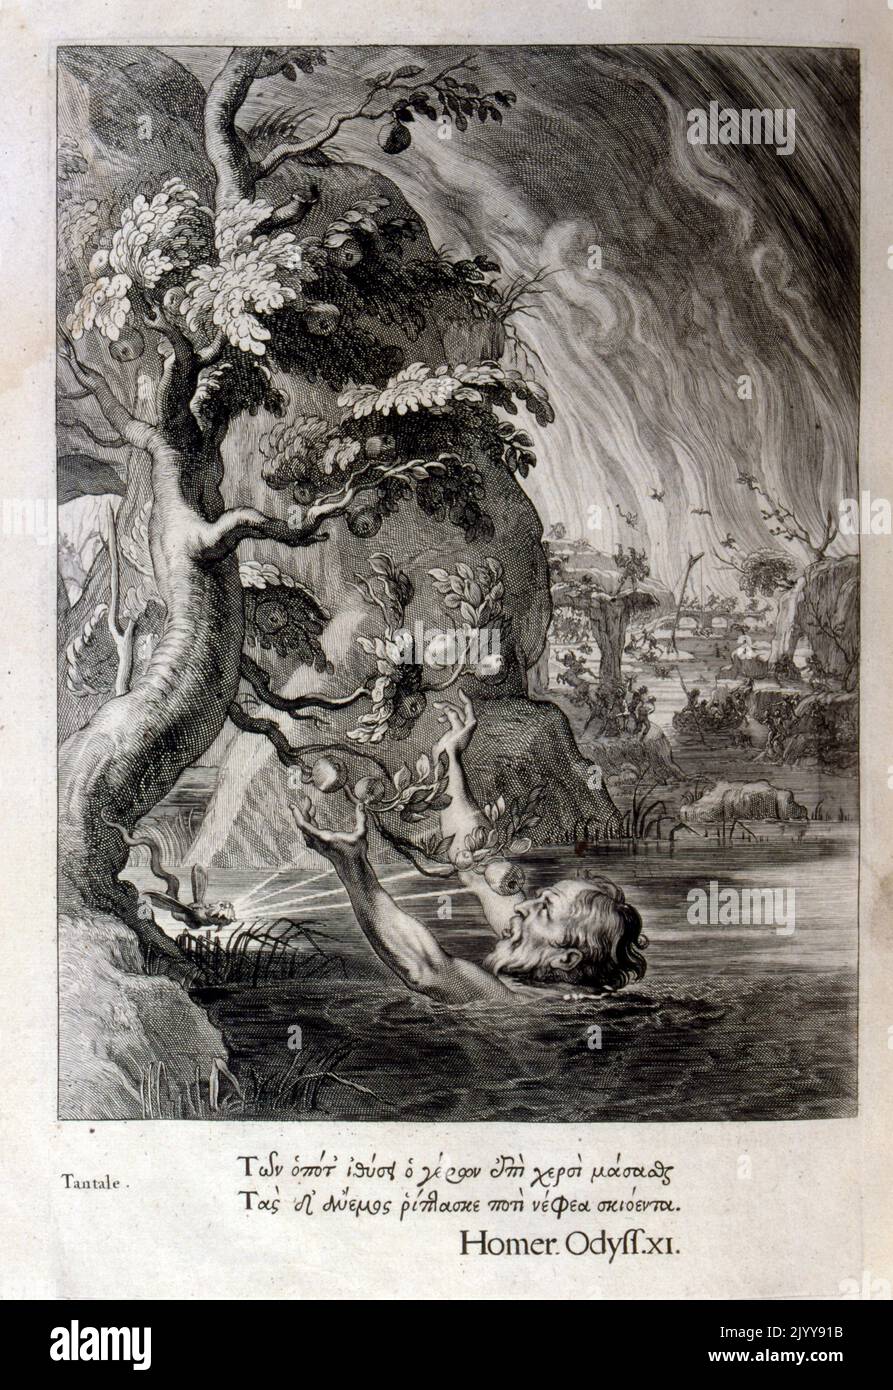 Gravure en noir et blanc Illustration d'une édition de l'Odyssée de Homer. Un homme est dans l'eau pour atteindre les fruits poussant sur un arbre. Banque D'Images